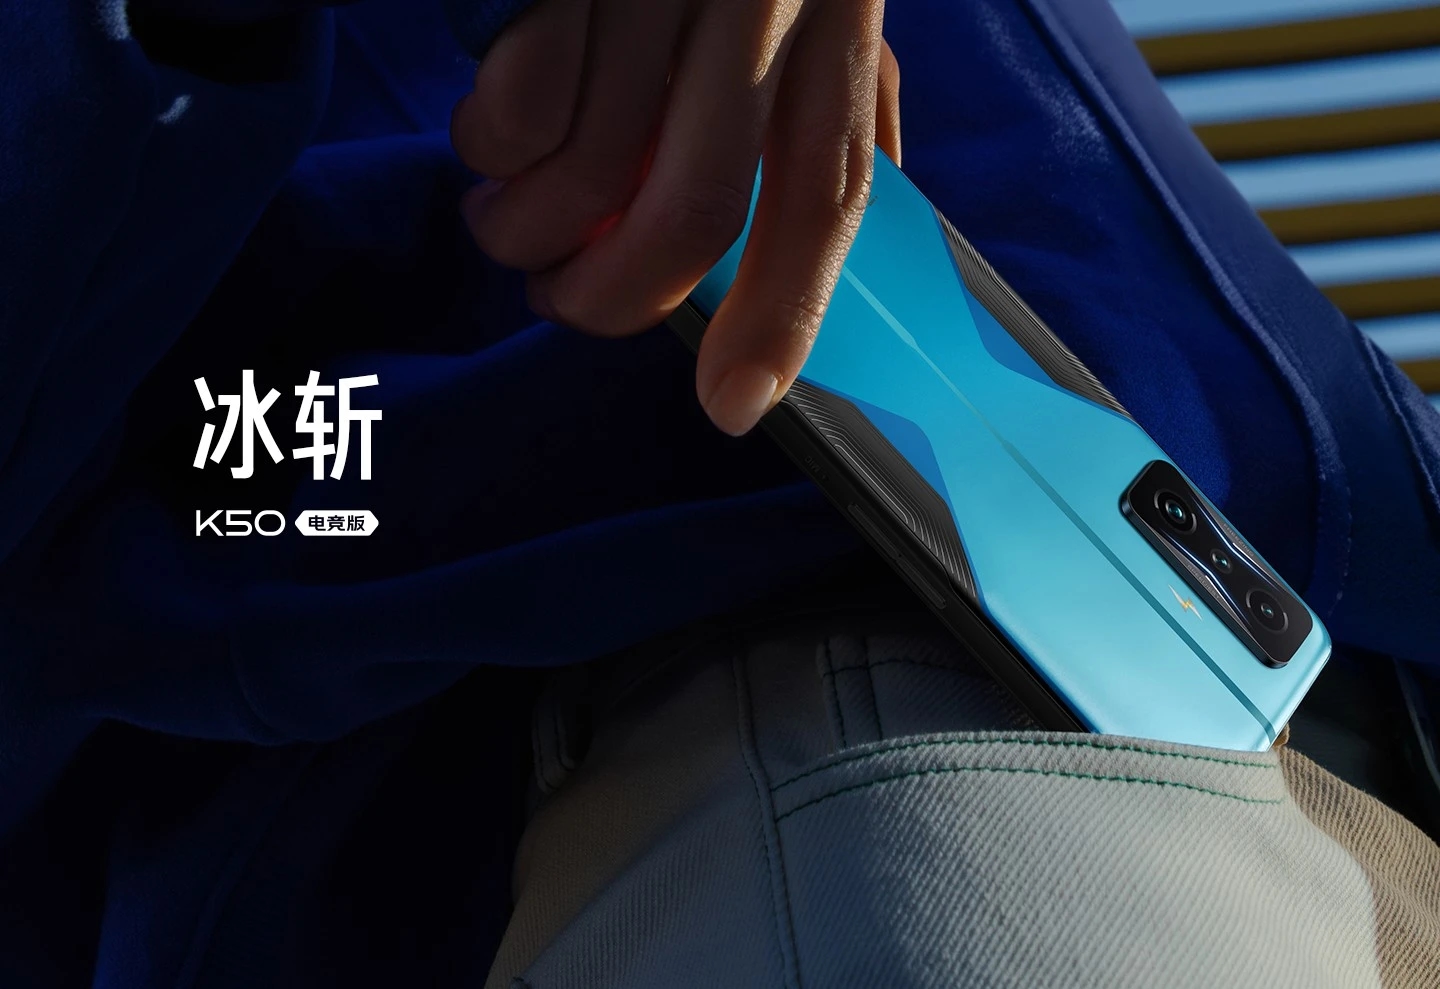 Redmi K50 Gaming Edition: Gaming-Smartphone mit Snapdragon 8 Gen 1-Chip und 120-Watt-Aufladung für 520 US-Dollar